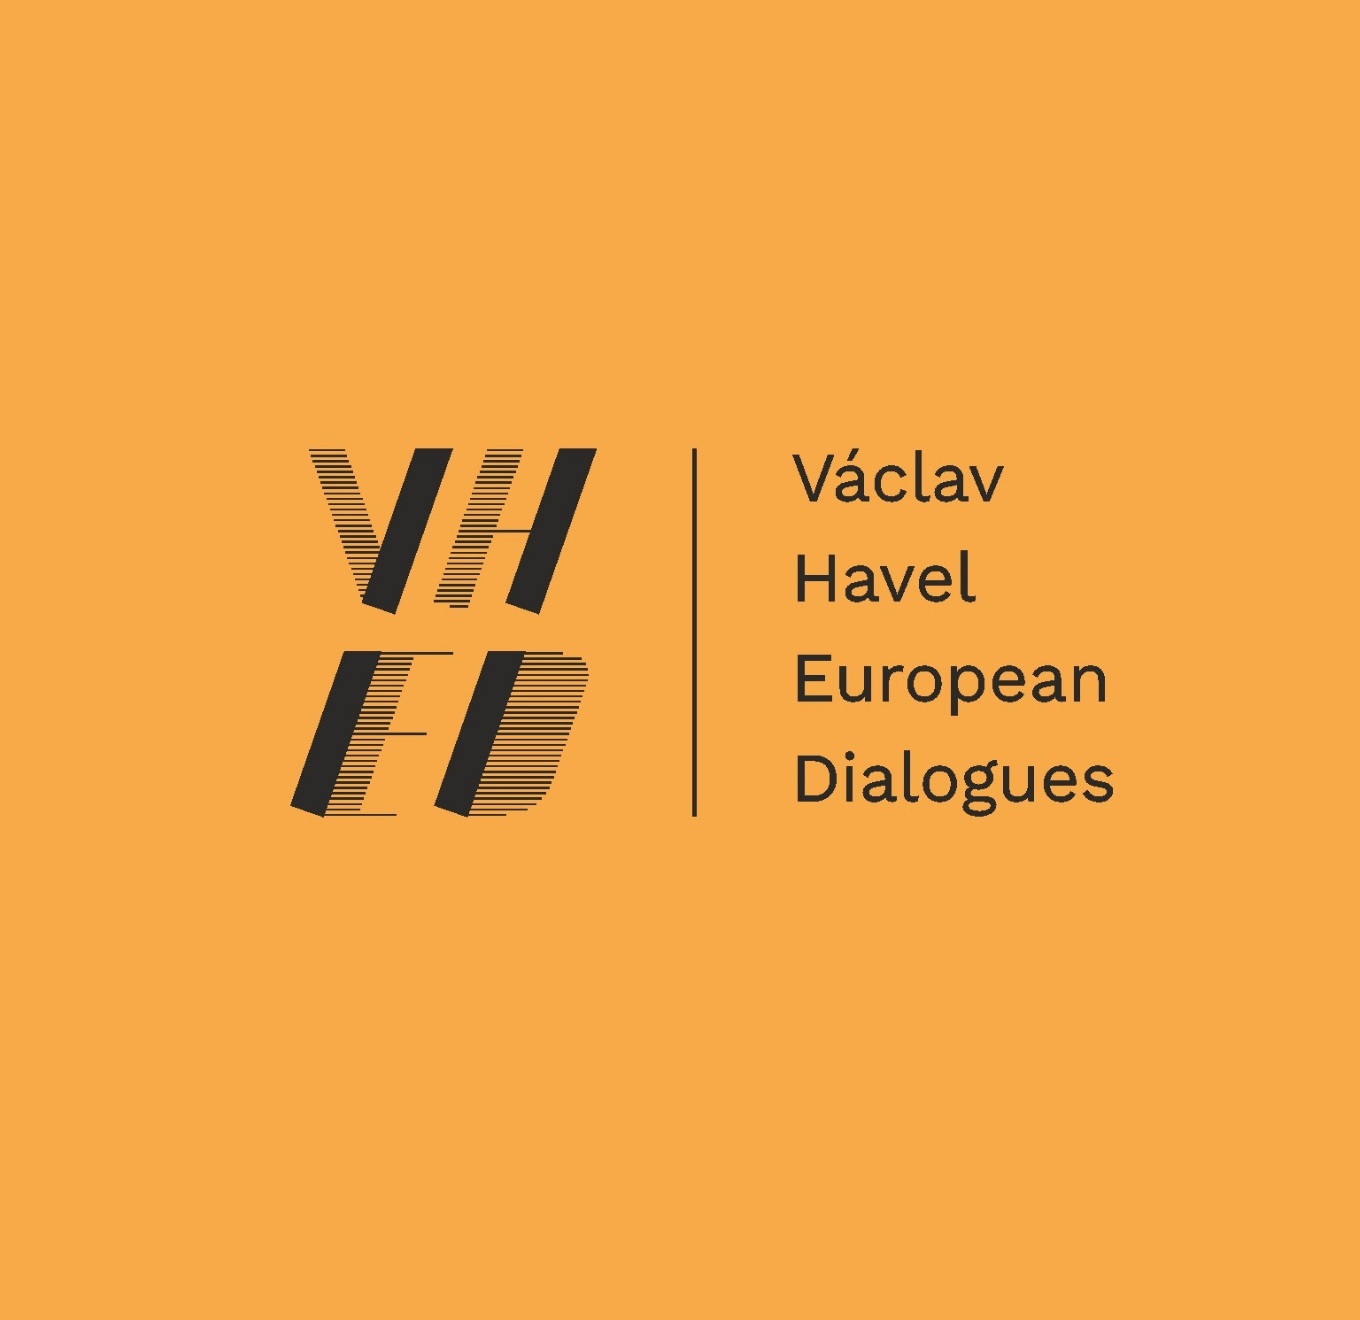 Evropské dialogy Václava Havla: Pravda už byla?, Plzeň